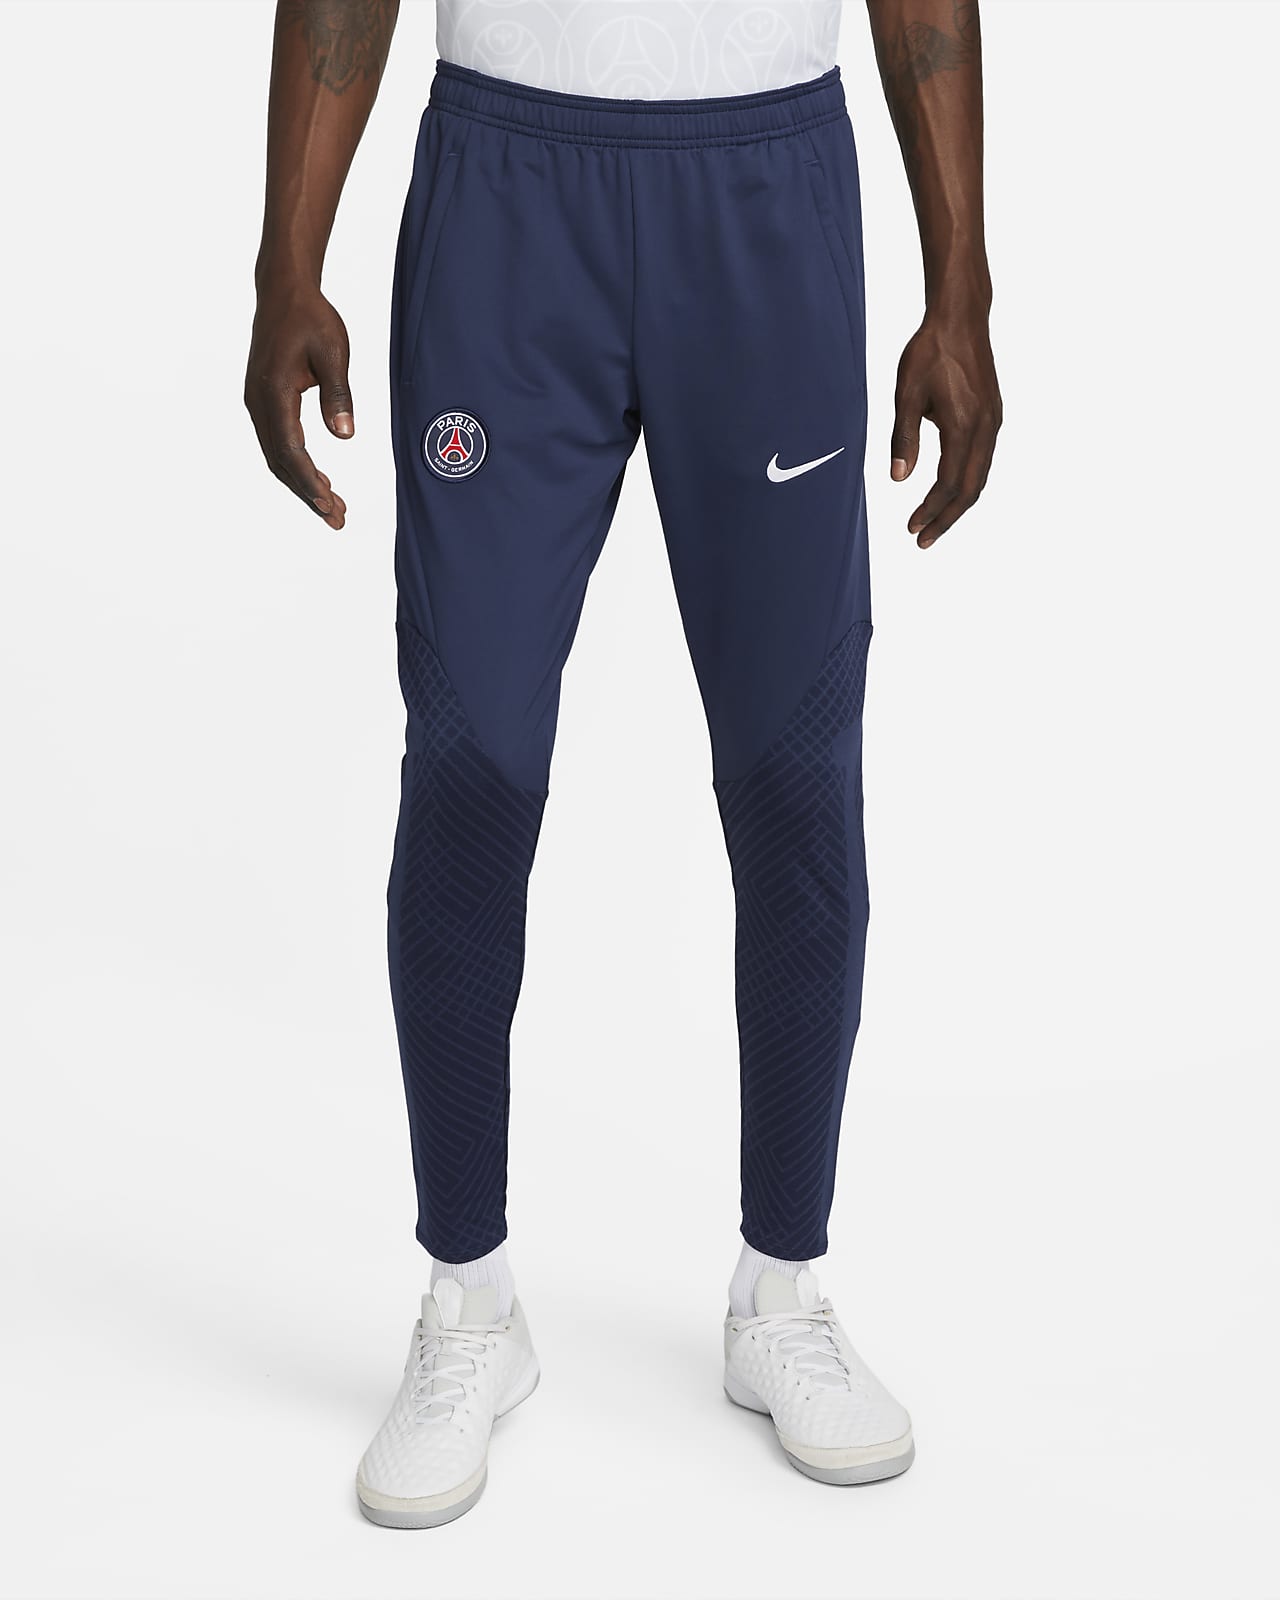 Paris Saint-Germain Dri-FIT Football Pants. Nike LU